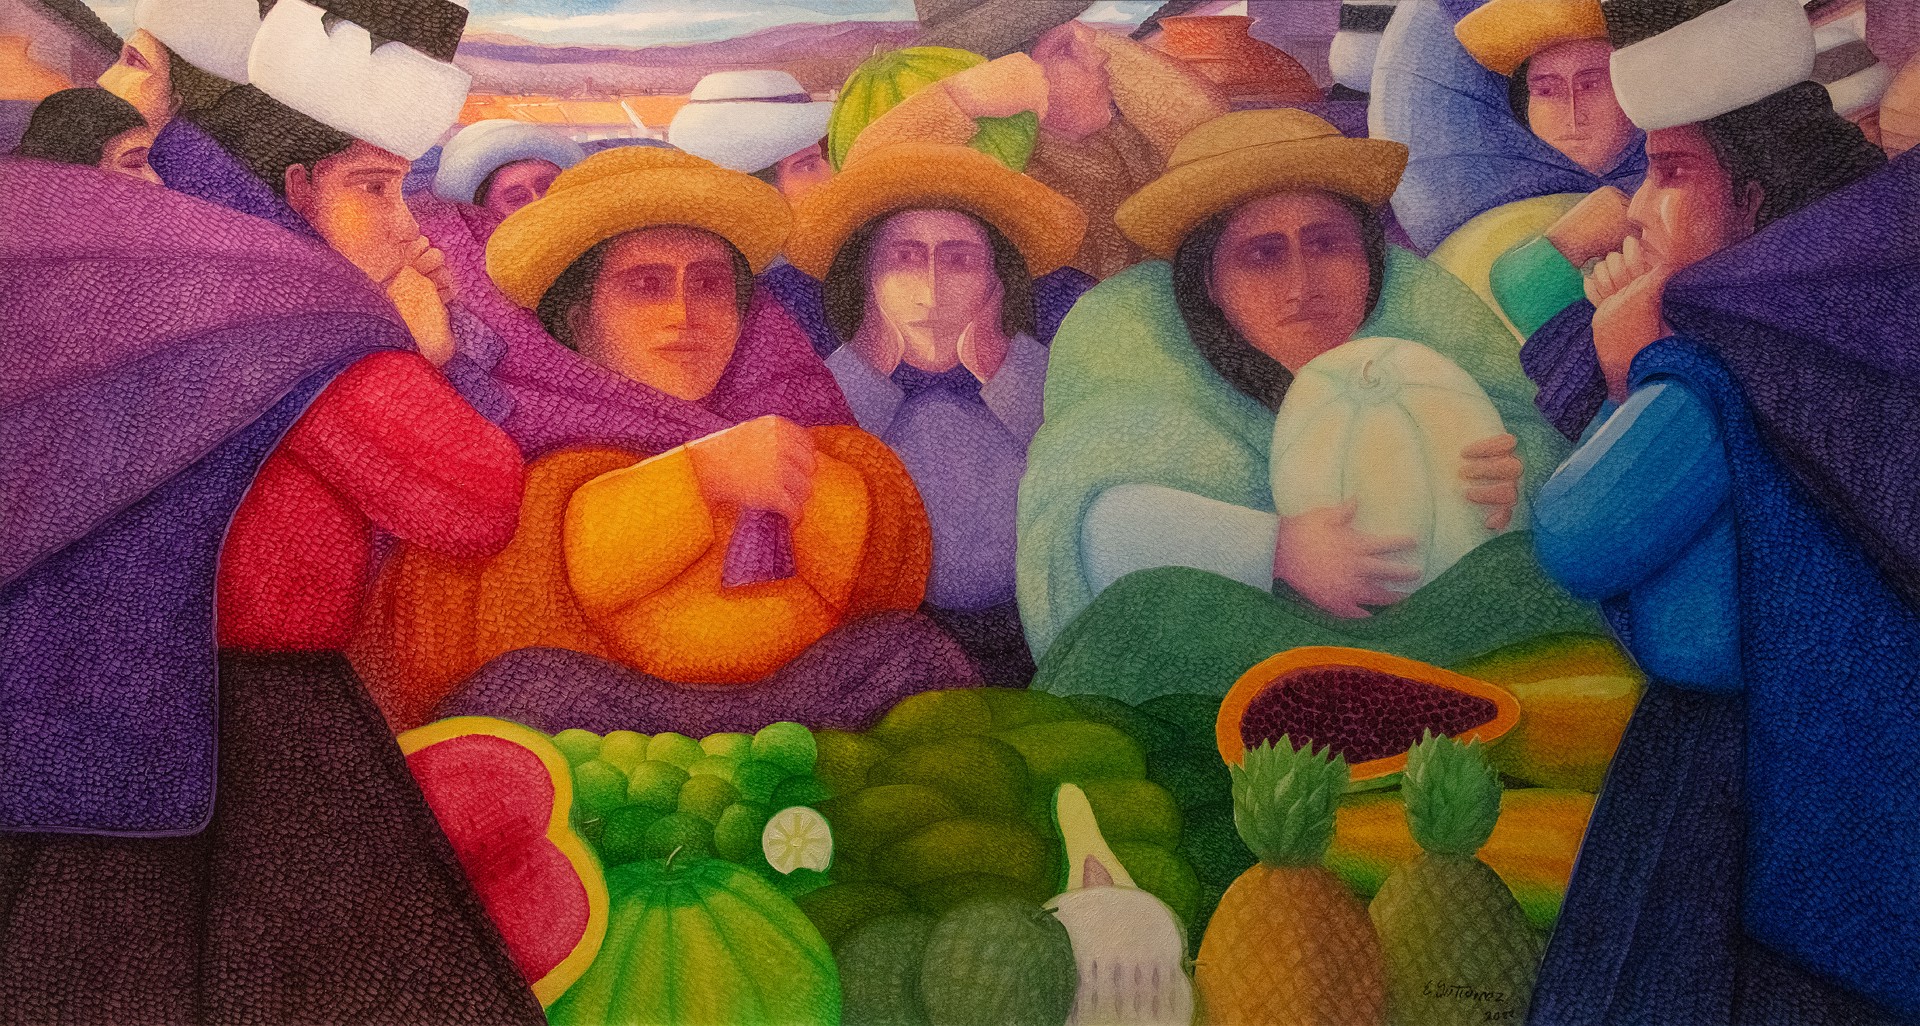 Vendiendo Frutas (Selling Fruits) by Ernesto Gutierrez